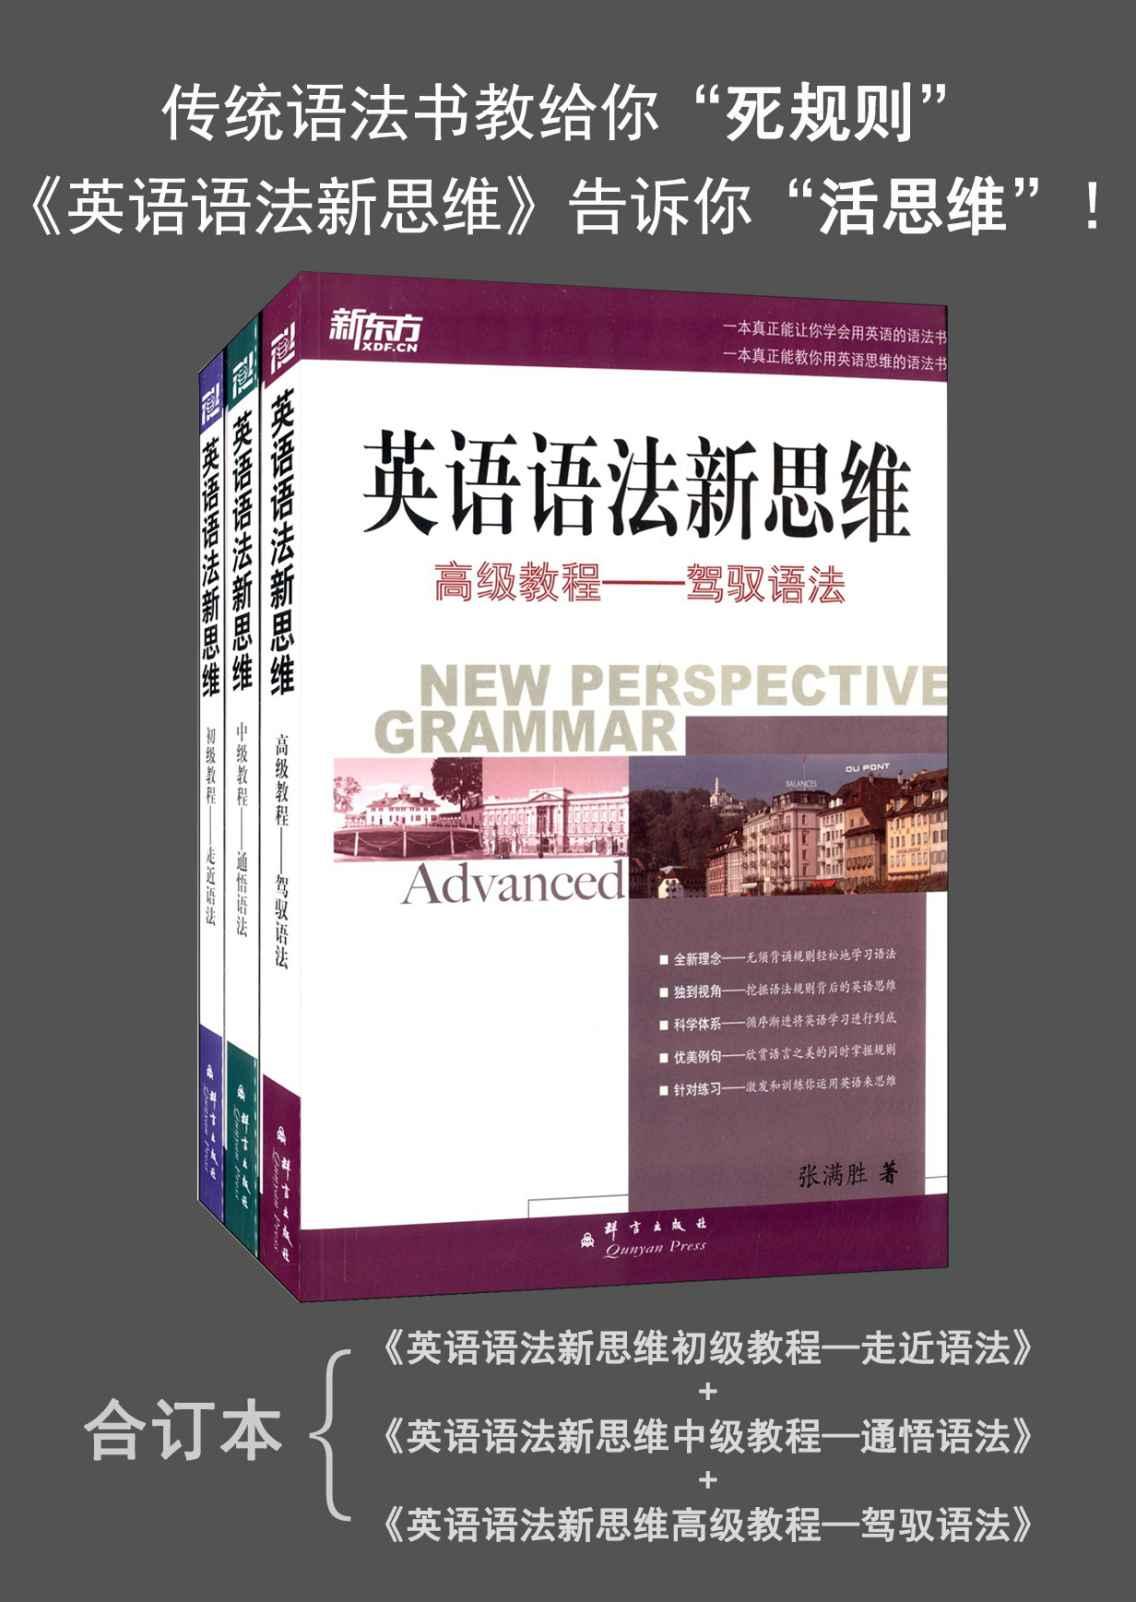 新东方·英语语法新思维:初级教程+中级教程+高级教程(套装共3册)